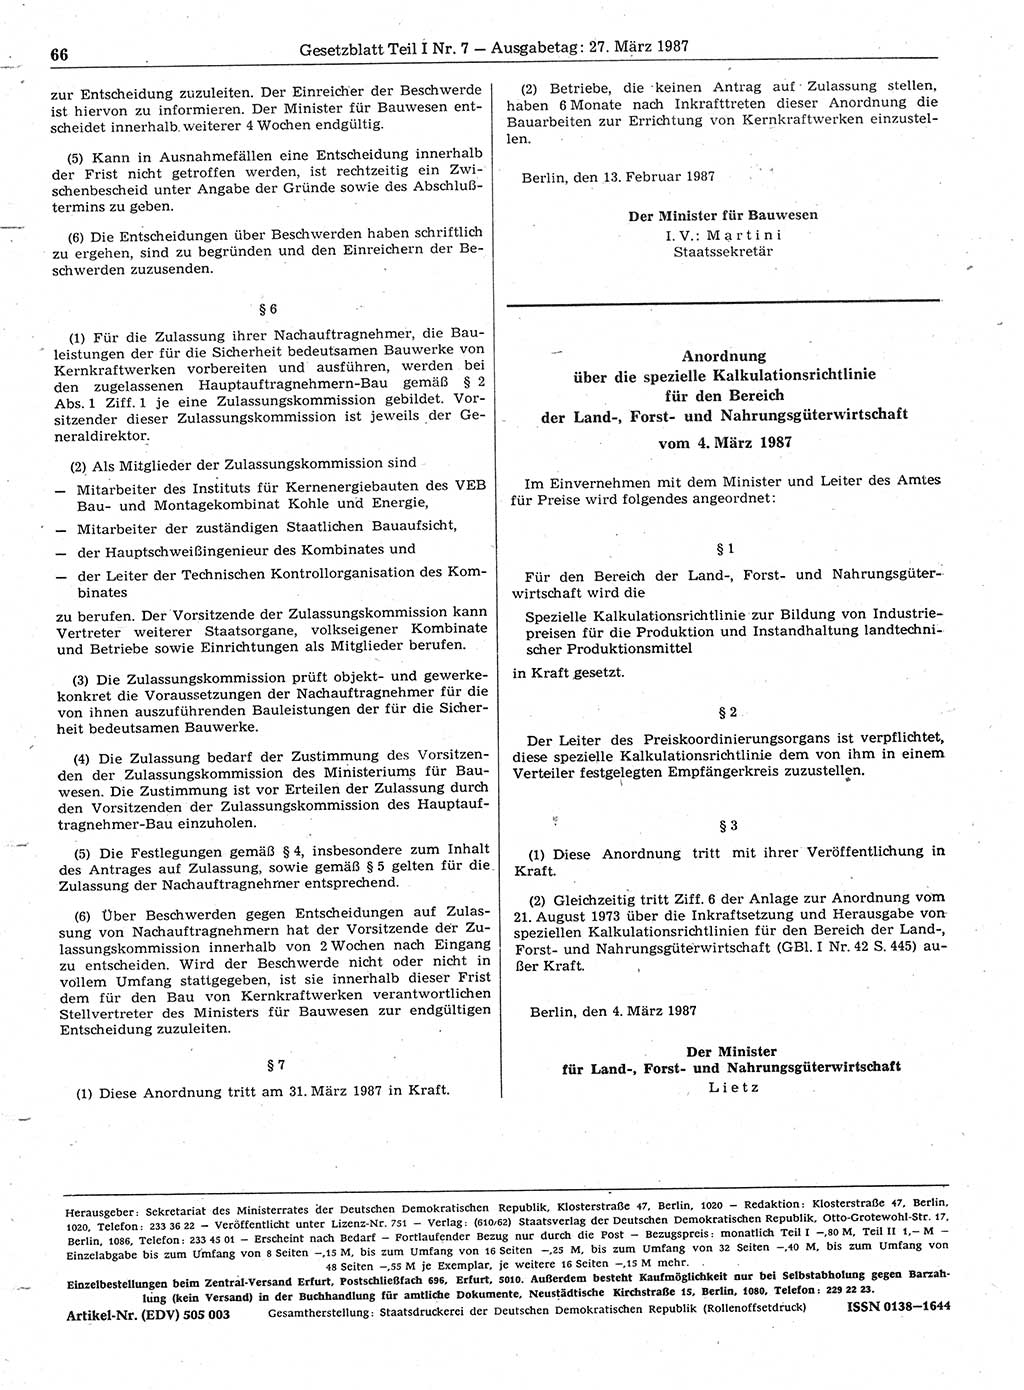 Gesetzblatt (GBl.) der Deutschen Demokratischen Republik (DDR) Teil Ⅰ 1987, Seite 66 (GBl. DDR Ⅰ 1987, S. 66)